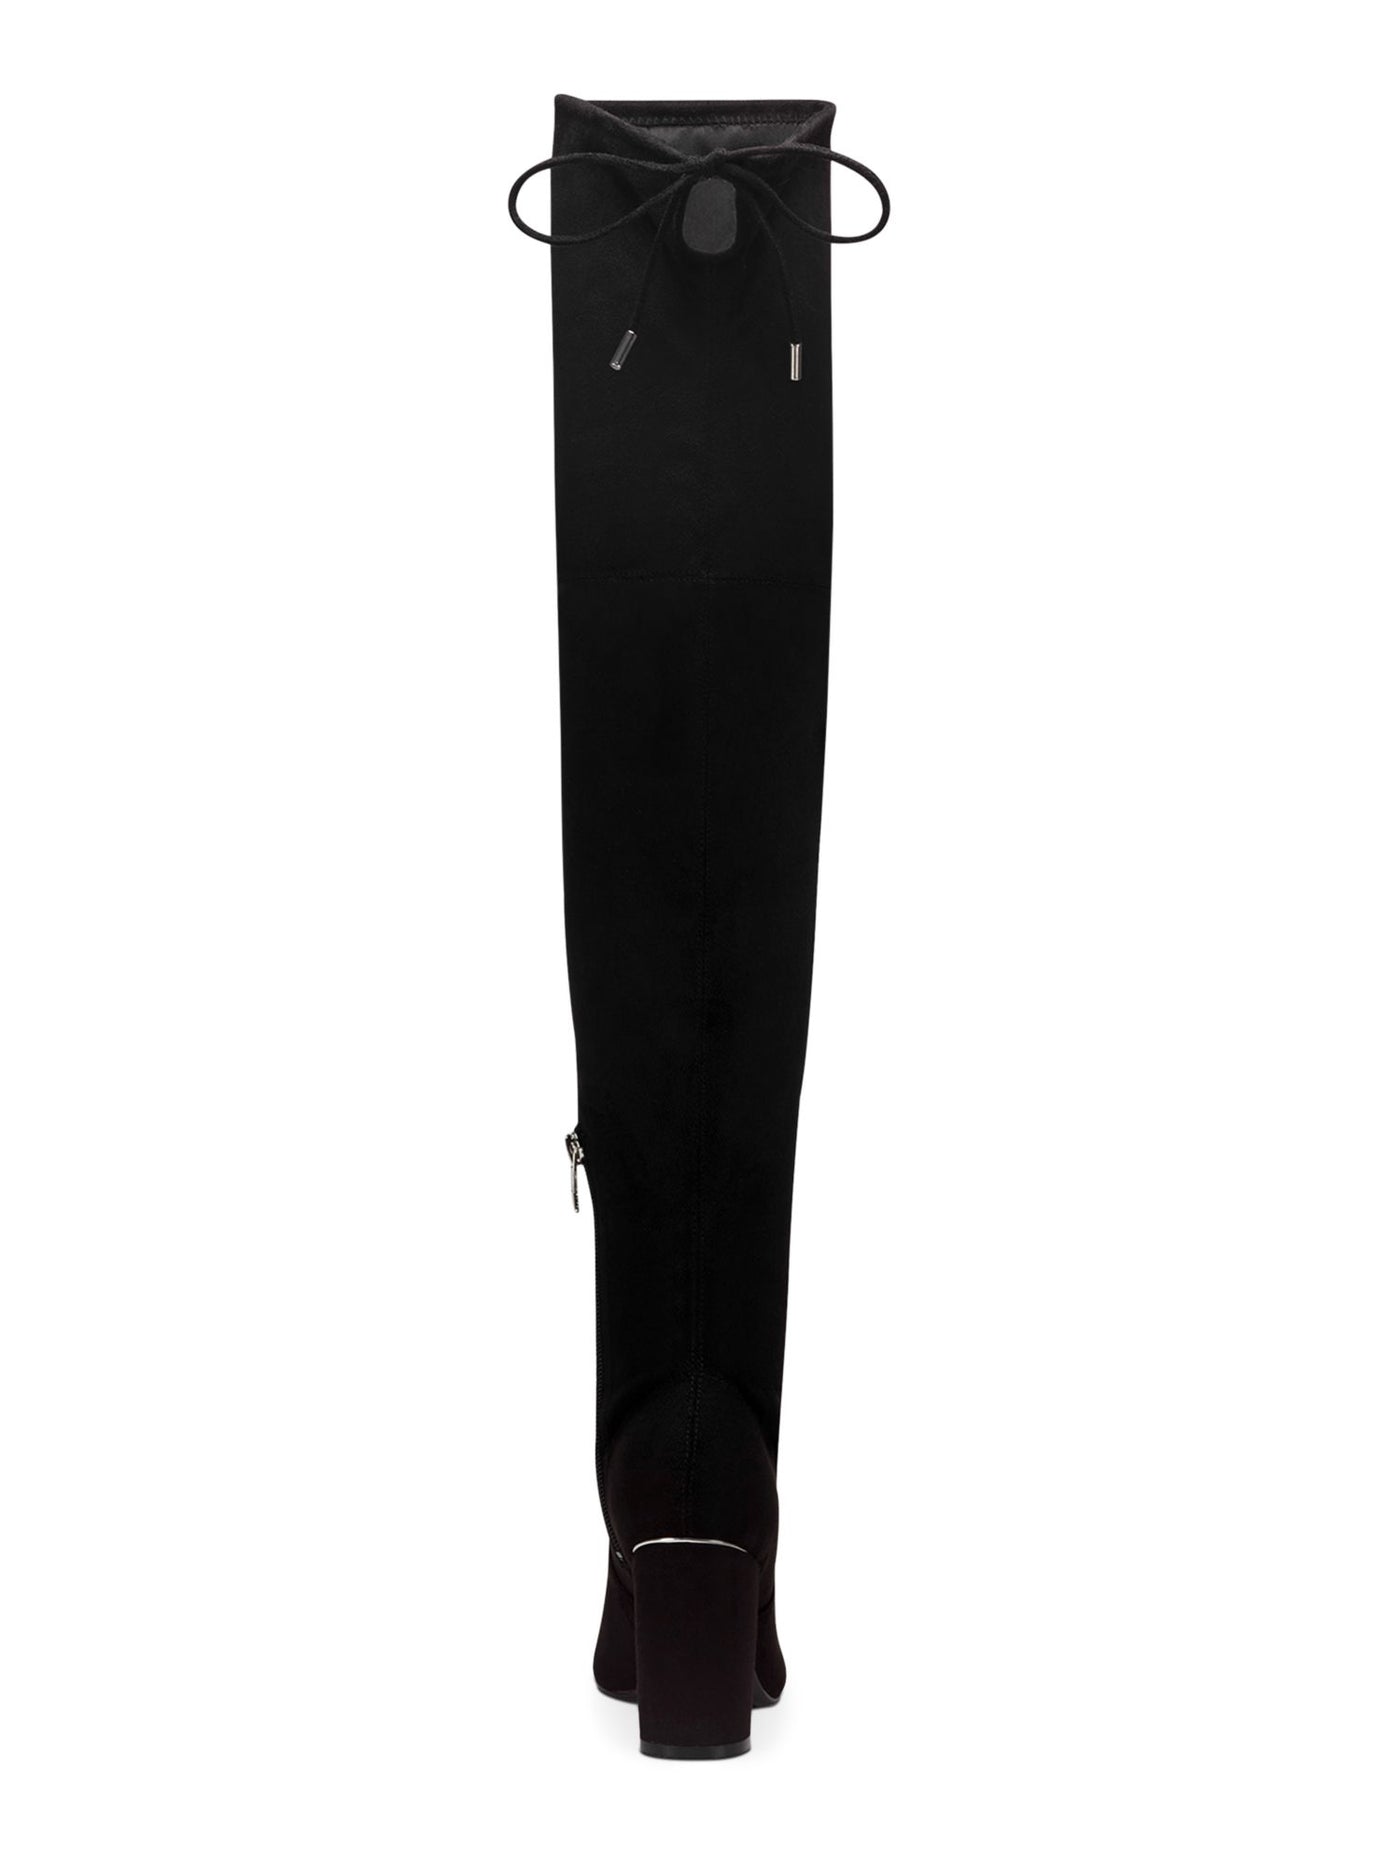 MARC FISHER Womens Black Tie Detail Water Resistant Comfort Vany Pointed Toe Block Heel Zip-Up Heeled Boots 9.5 M